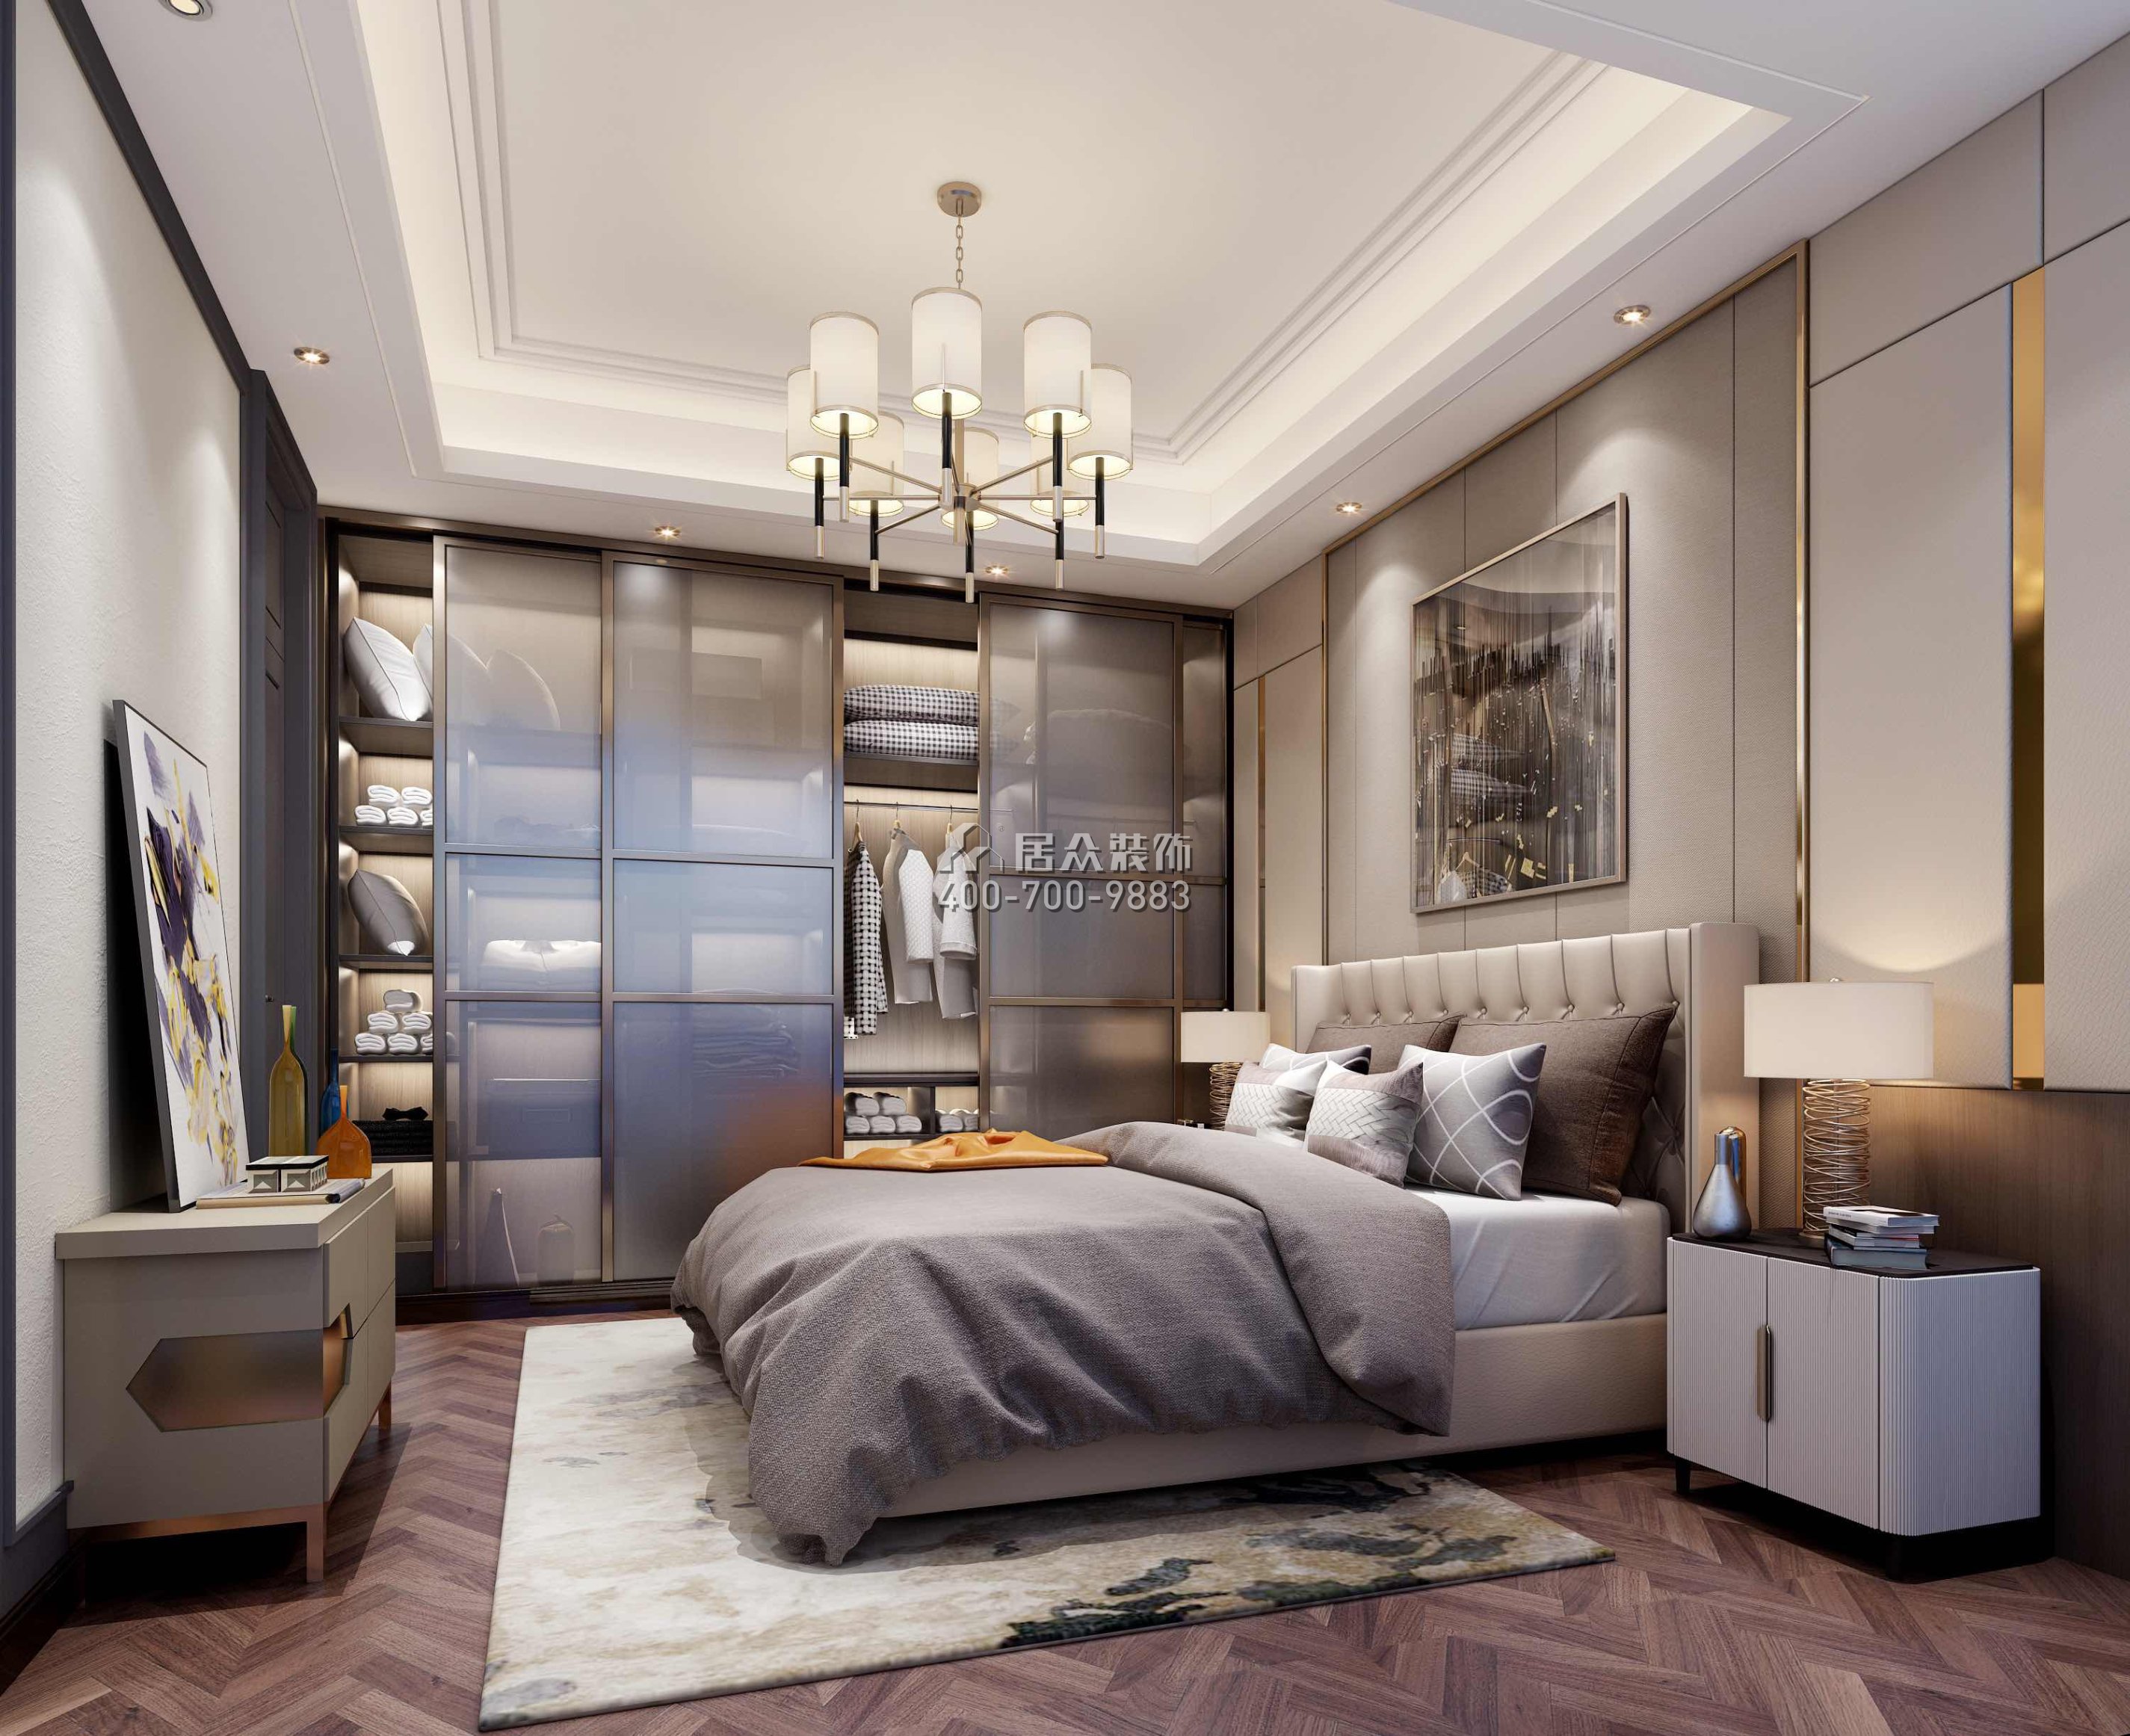 万科紫台600平方米现代简约风格别墅户型卧室装修效果图